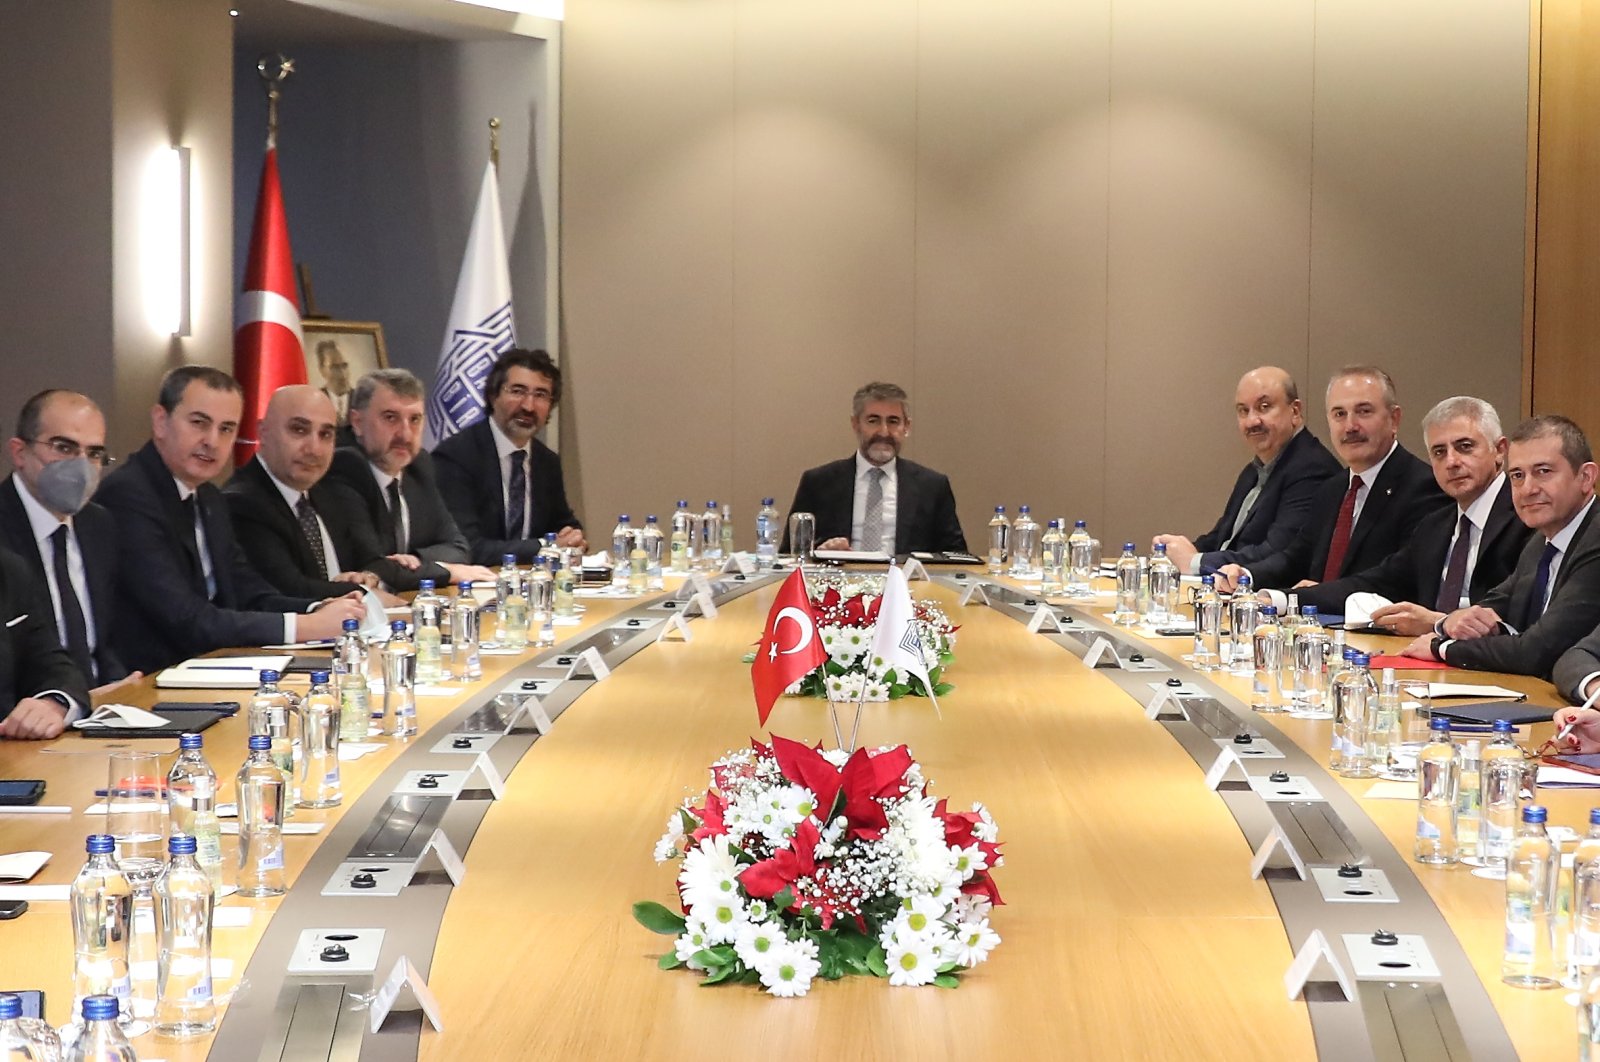 Menteri Keuangan Turki memberi pengarahan kepada asosiasi bank tentang model ekonomi baru